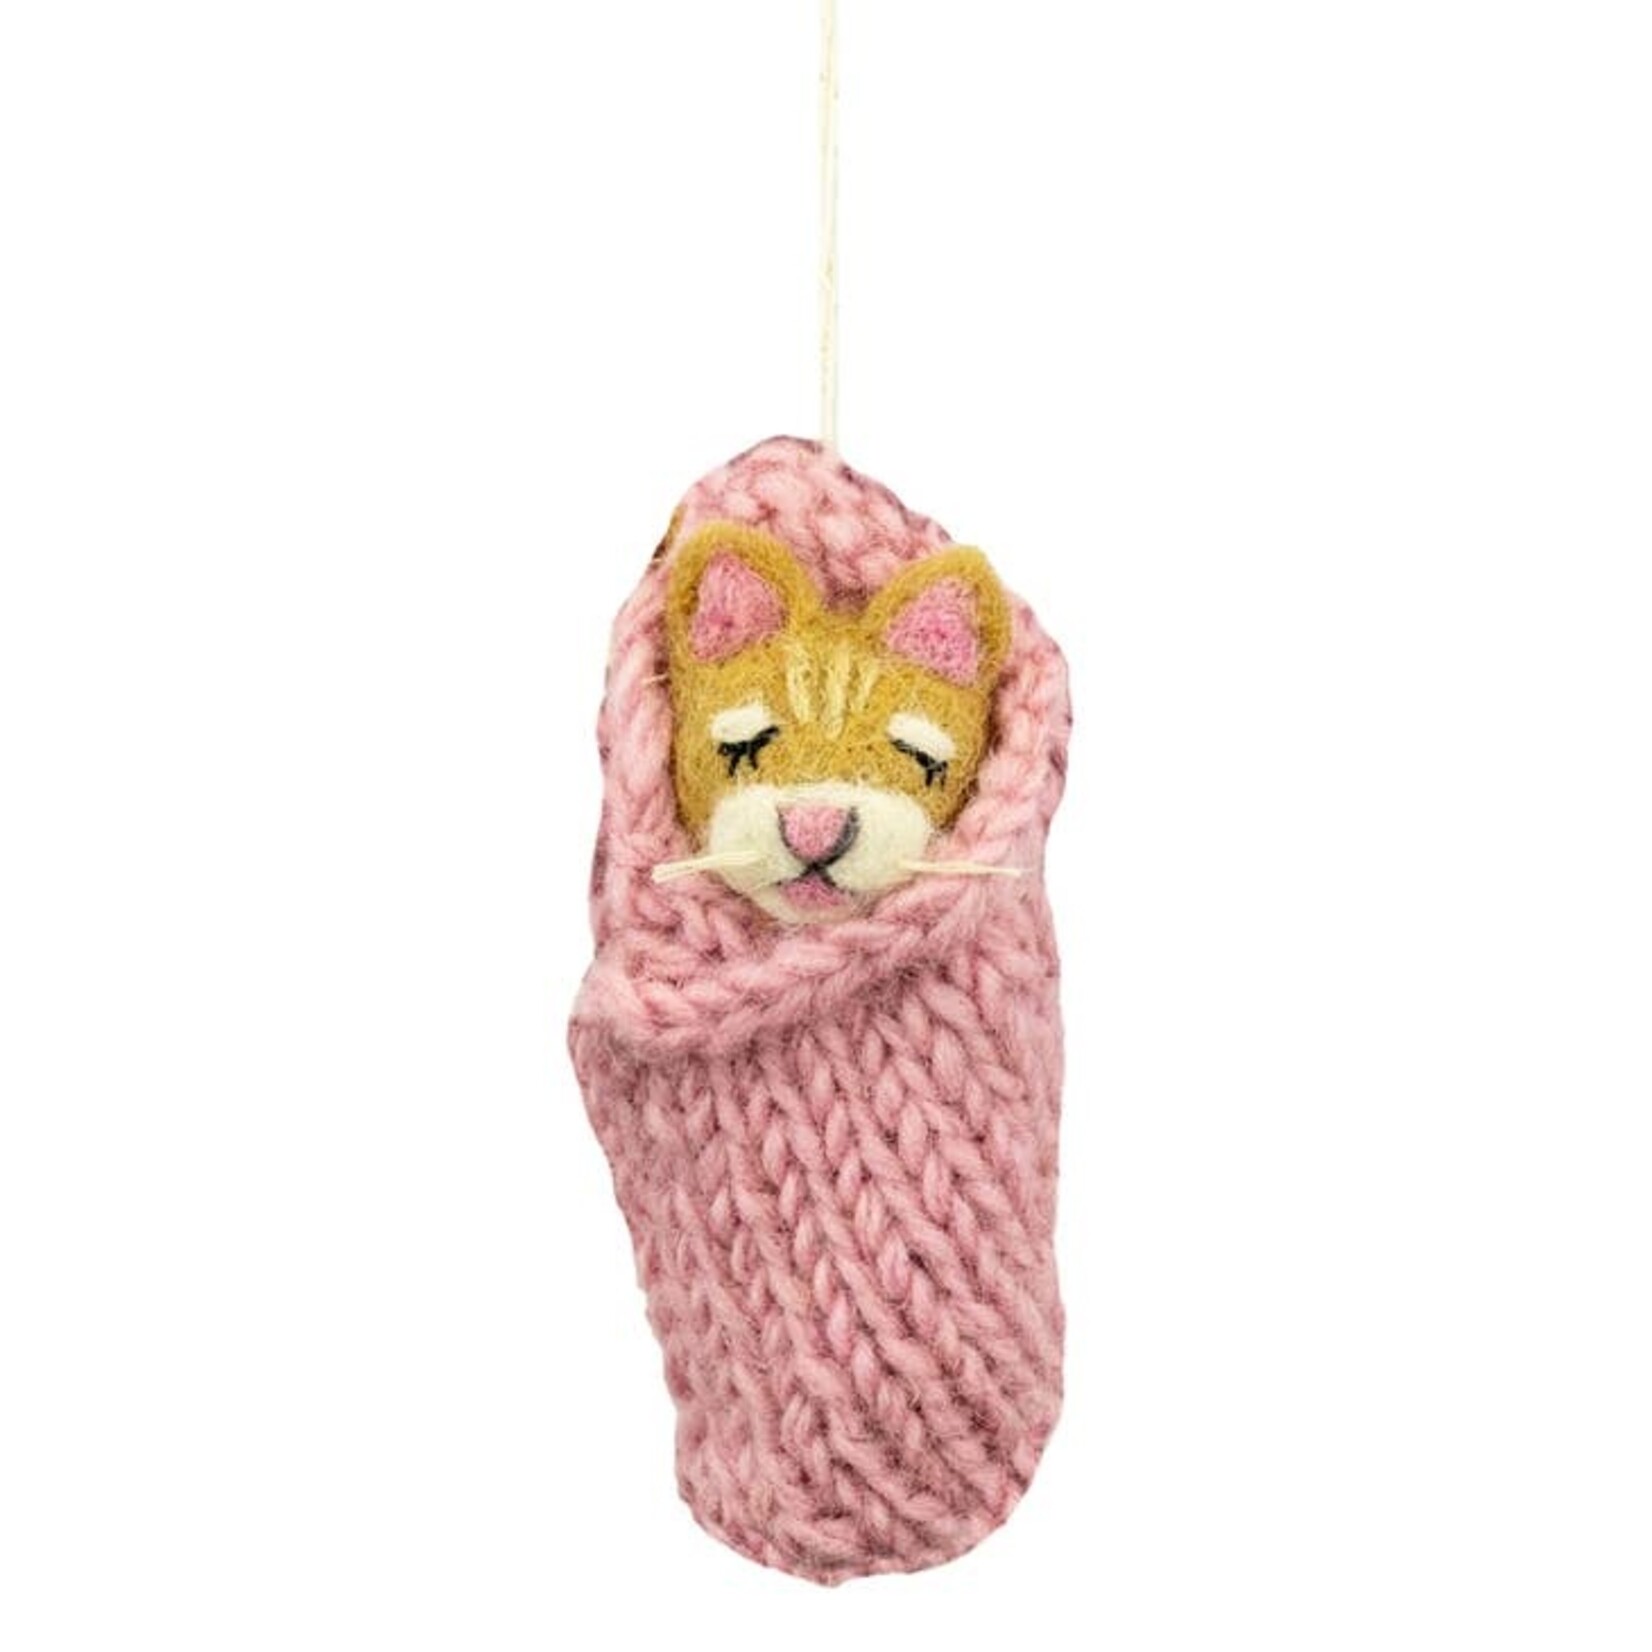 DZI dZi Handmade Cozy Pink Kitty Ornament